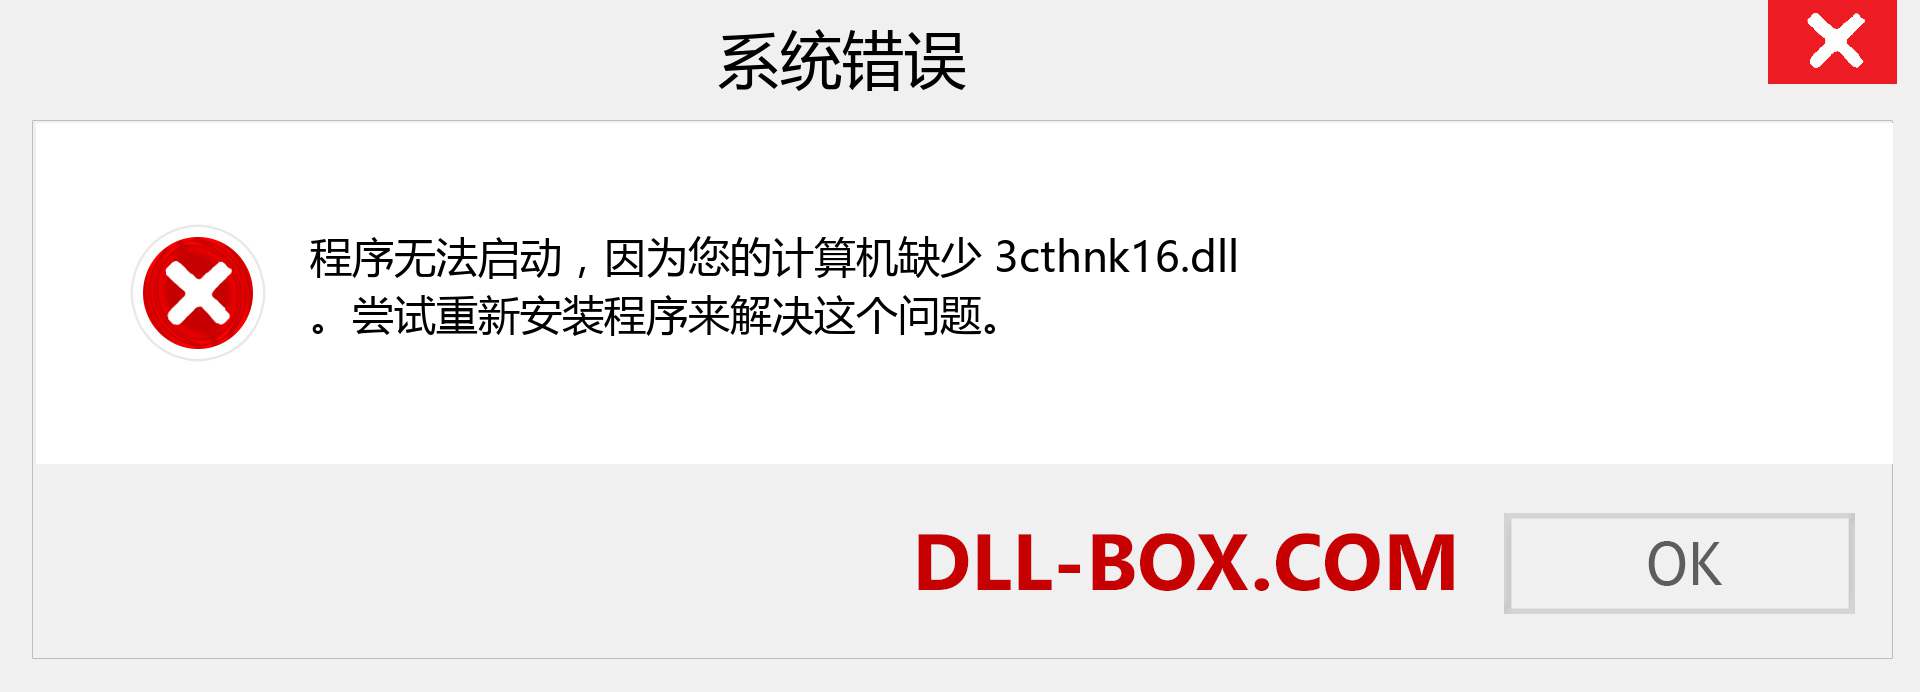 3cthnk16.dll 文件丢失？。 适用于 Windows 7、8、10 的下载 - 修复 Windows、照片、图像上的 3cthnk16 dll 丢失错误